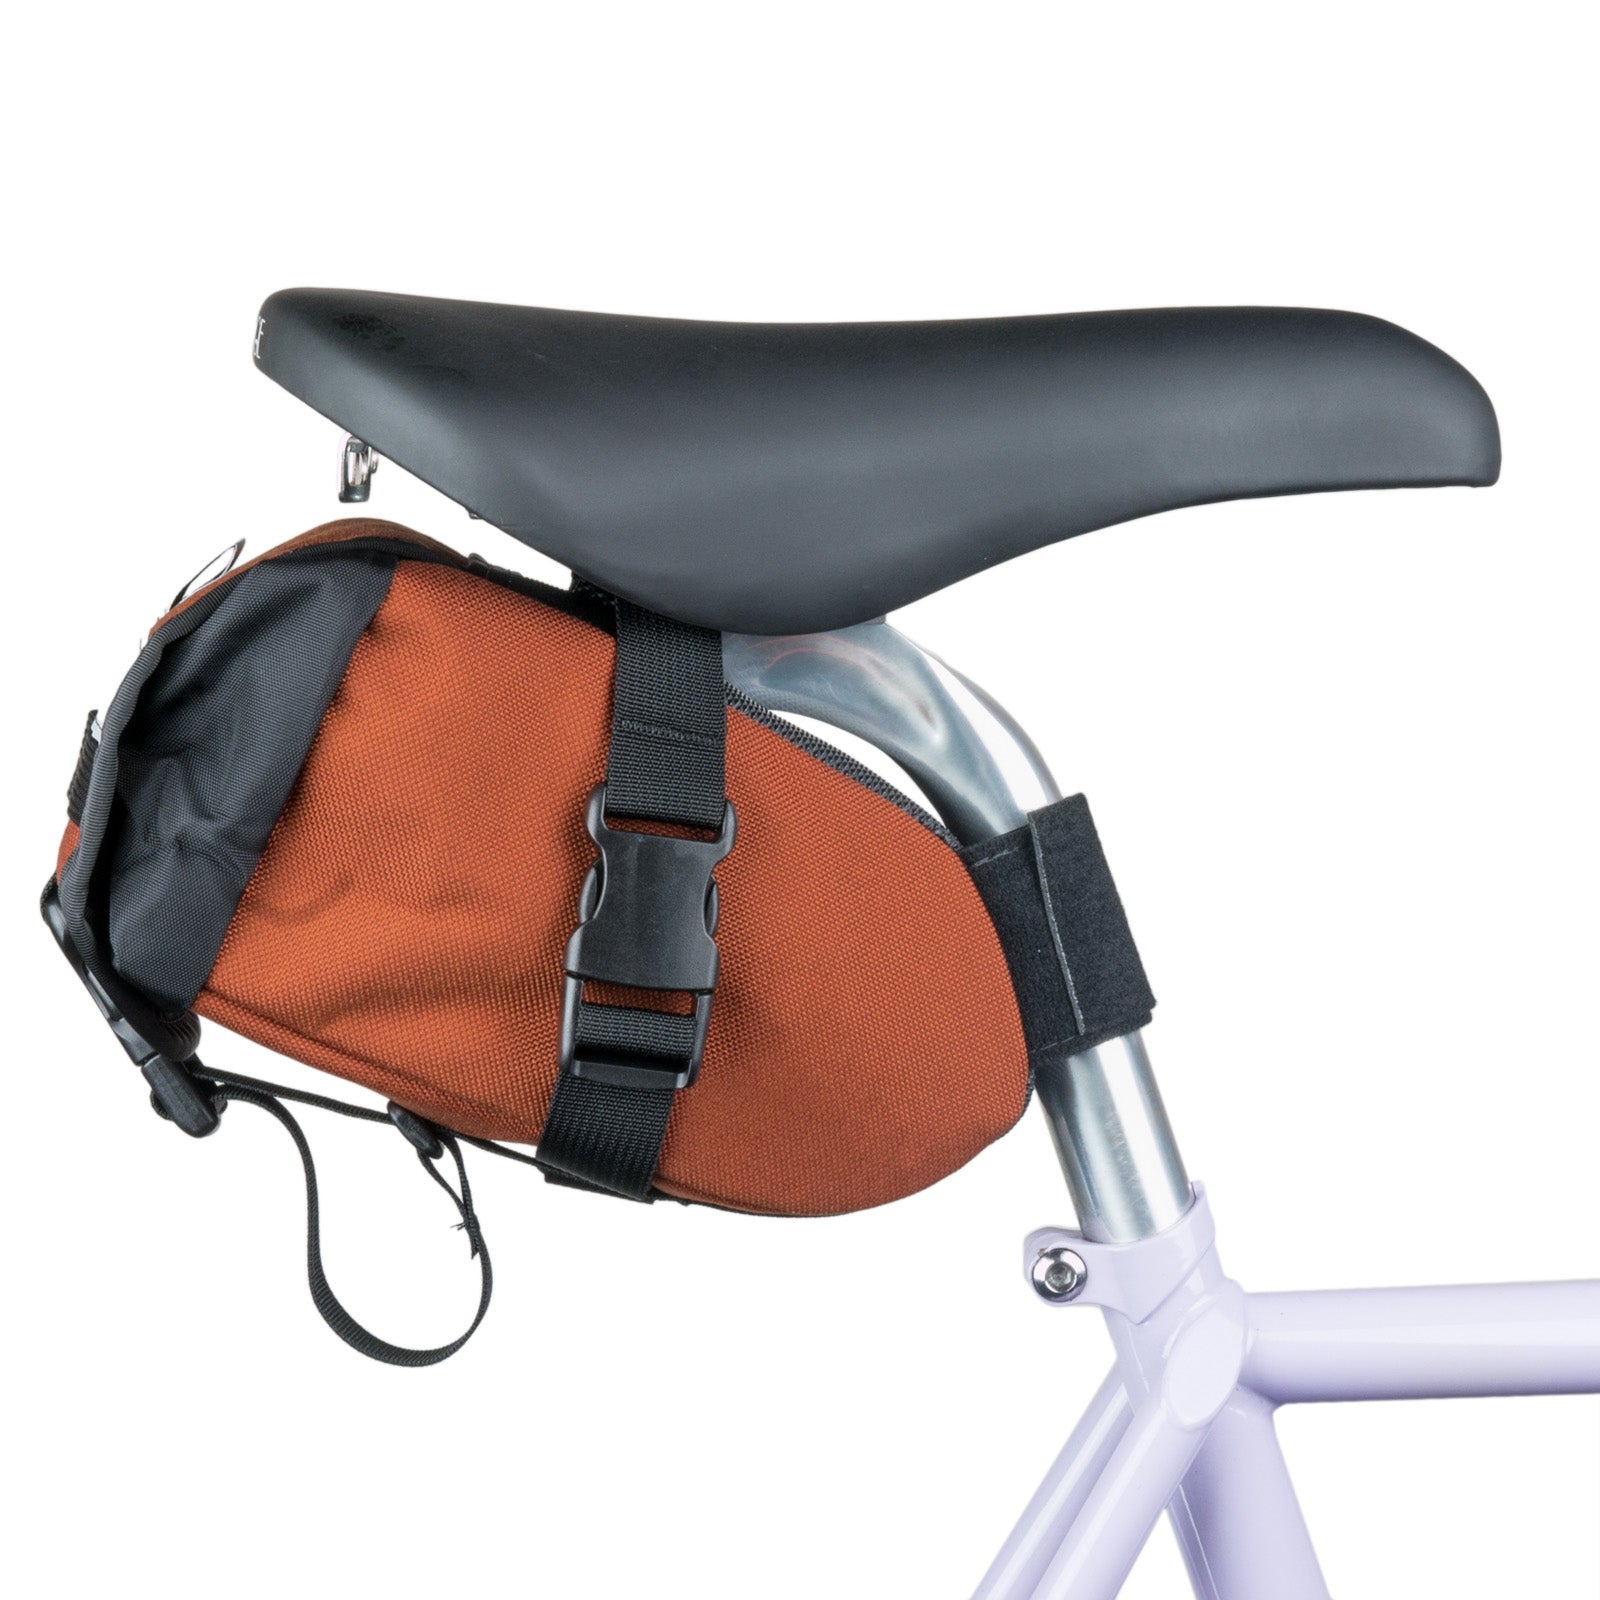 saddle bag on bike